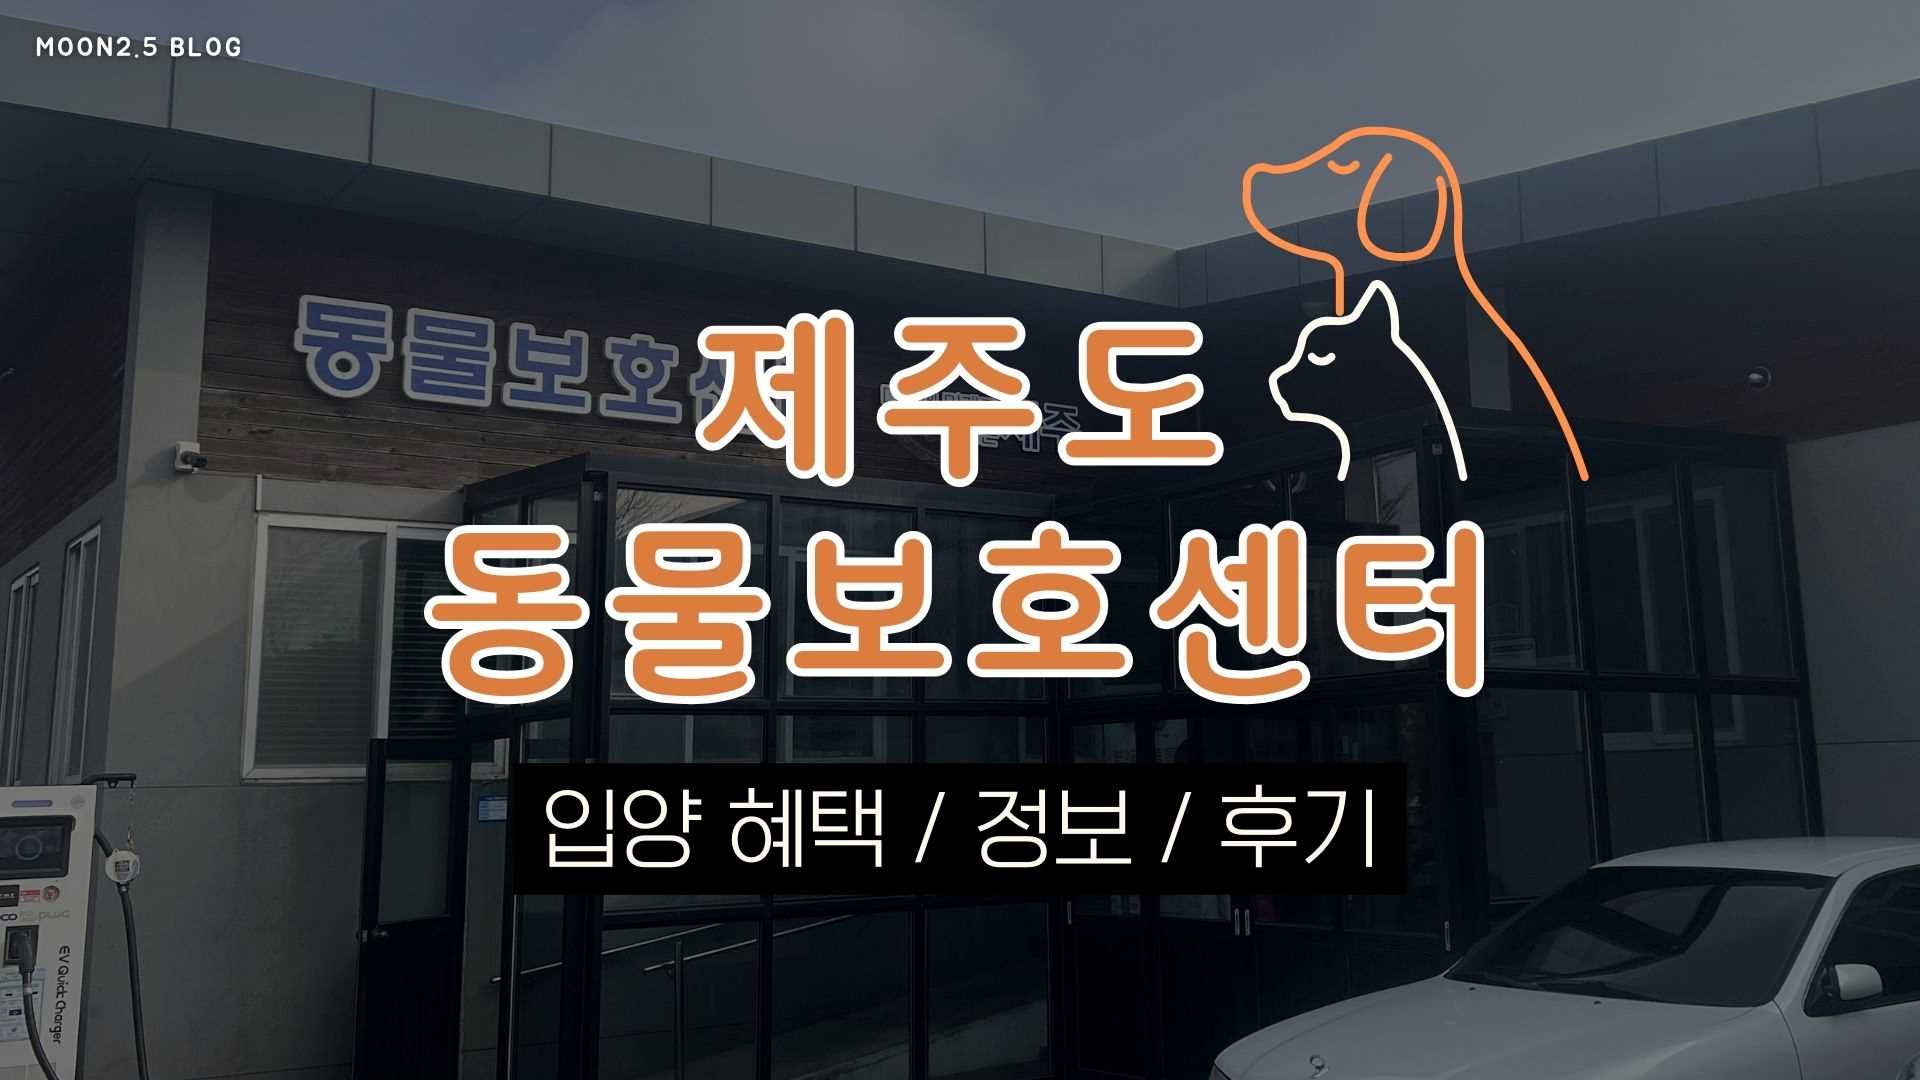 제주도-동물보호센터-유기견-유기묘-보호소-후기